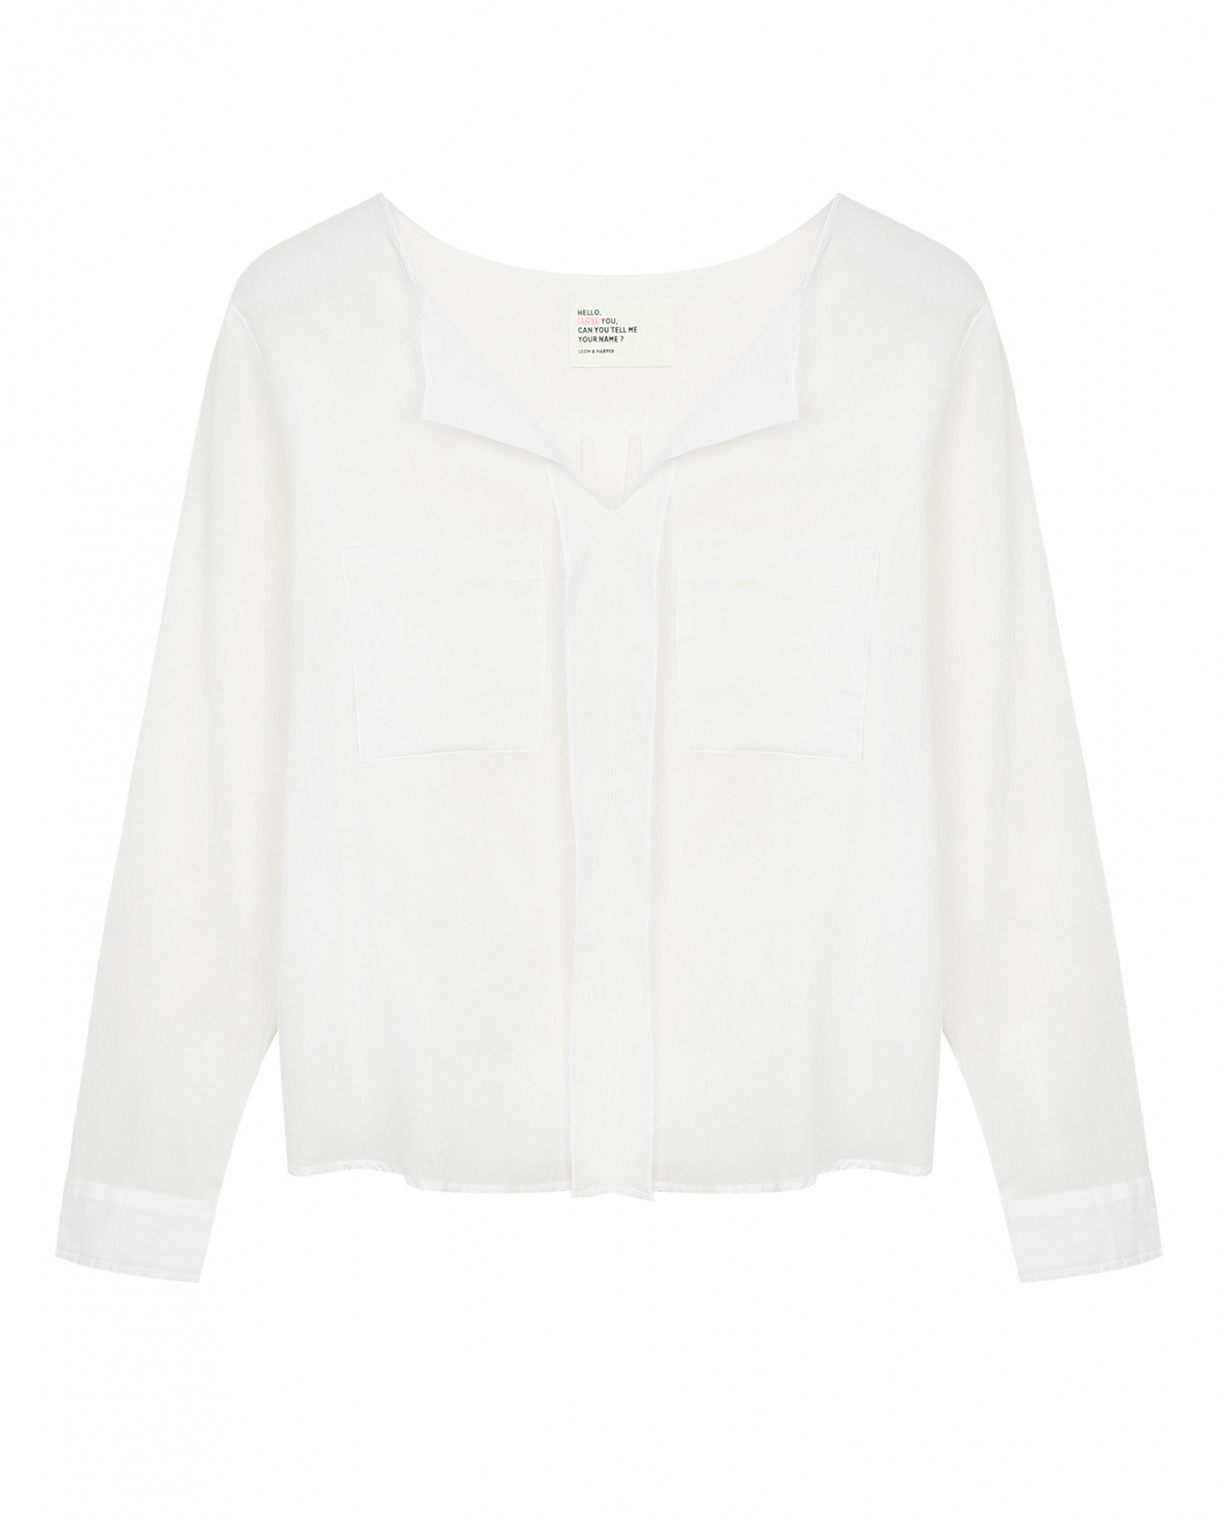 Хлопковая блуза свободного кроя с накладными карманами Leon&Harper  –  Общий вид  – Цвет:  Белый